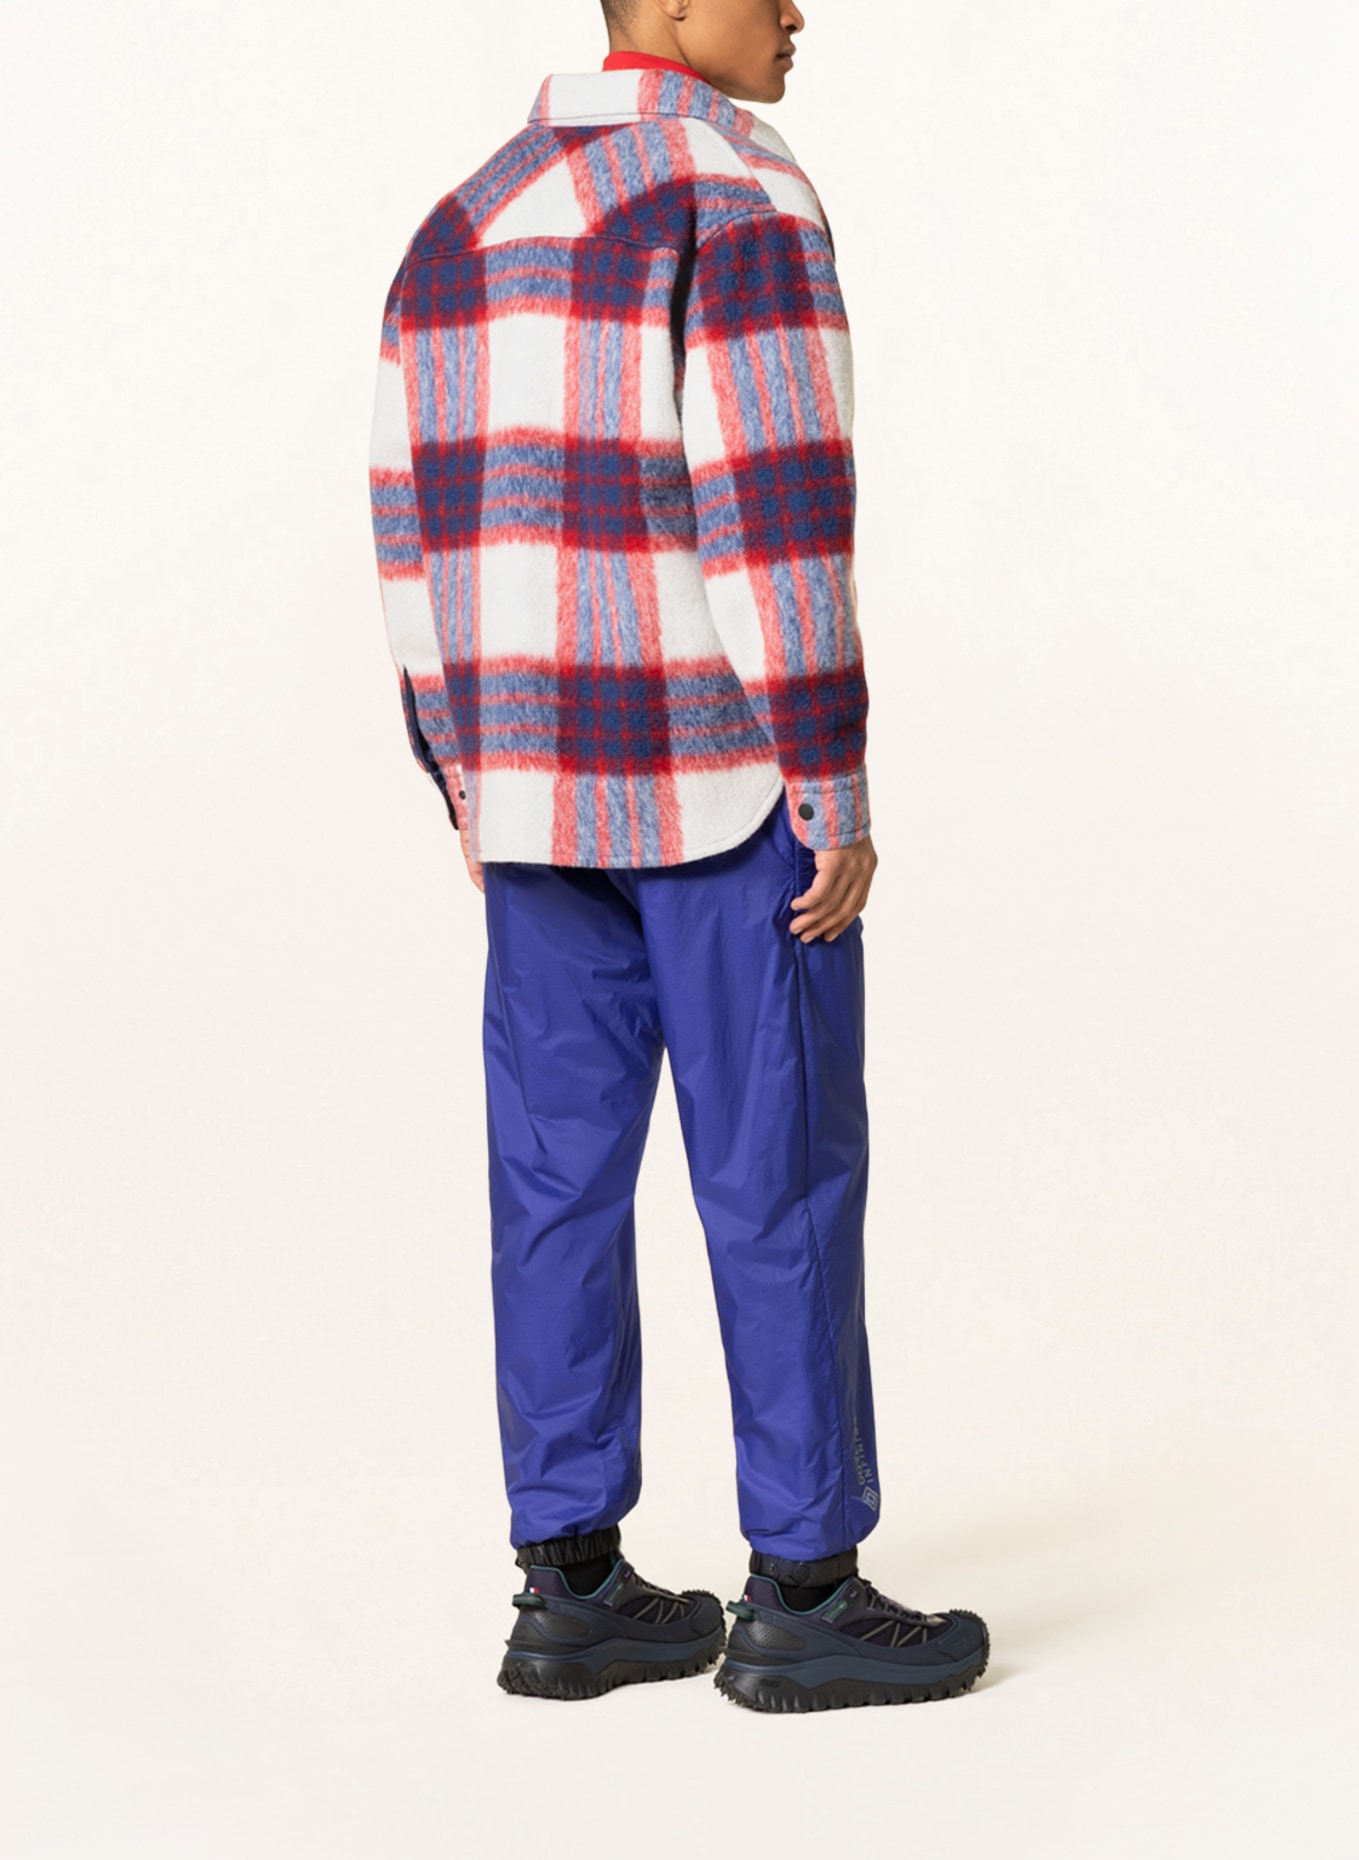 MONCLER GRENOBLE Jacke WAIER, Farbe: ECRU/ DUNKELROT/ DUNKELBLAU (Bild 3)